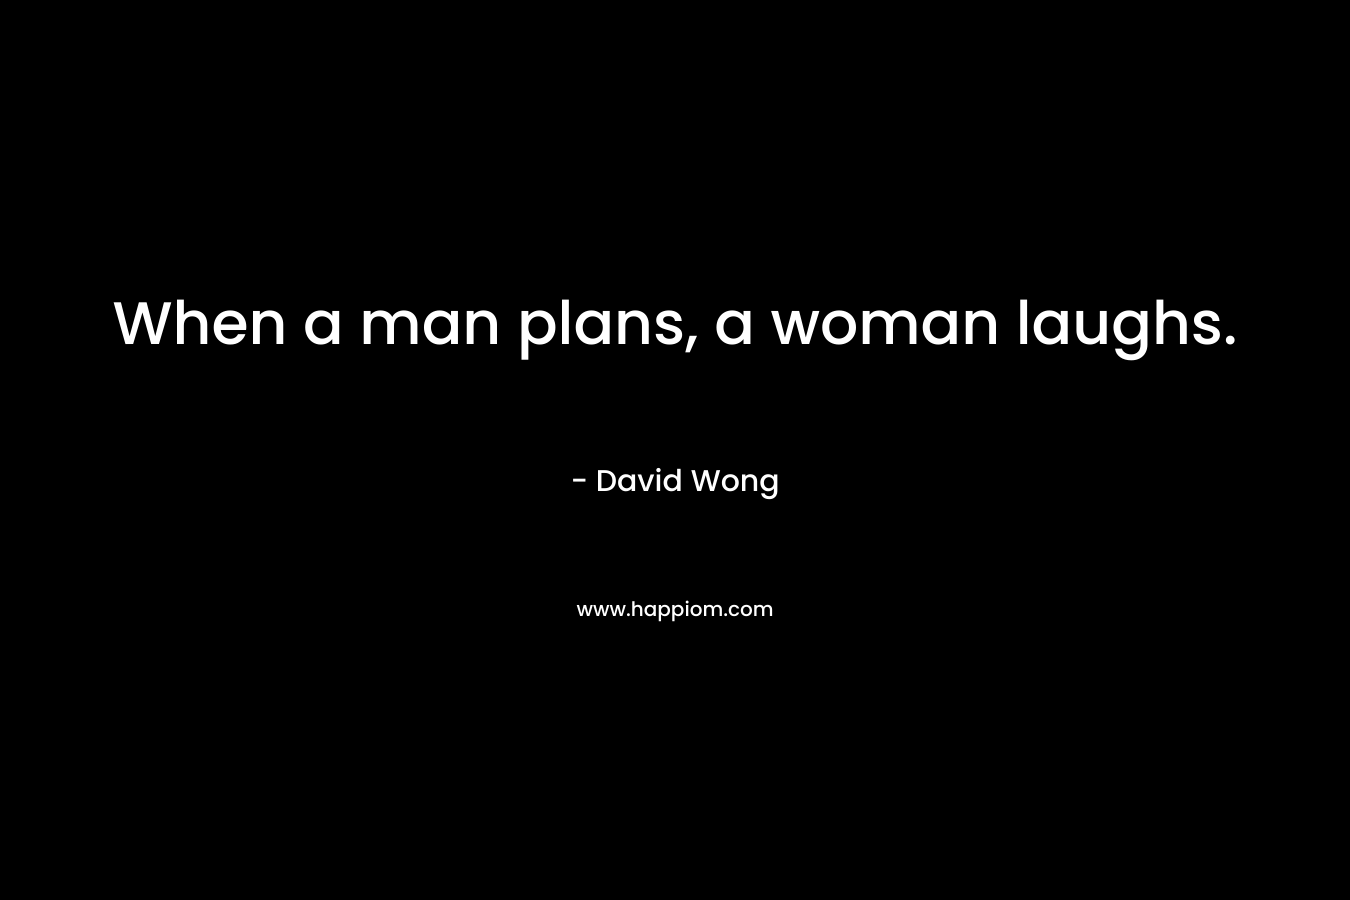 When a man plans, a woman laughs.